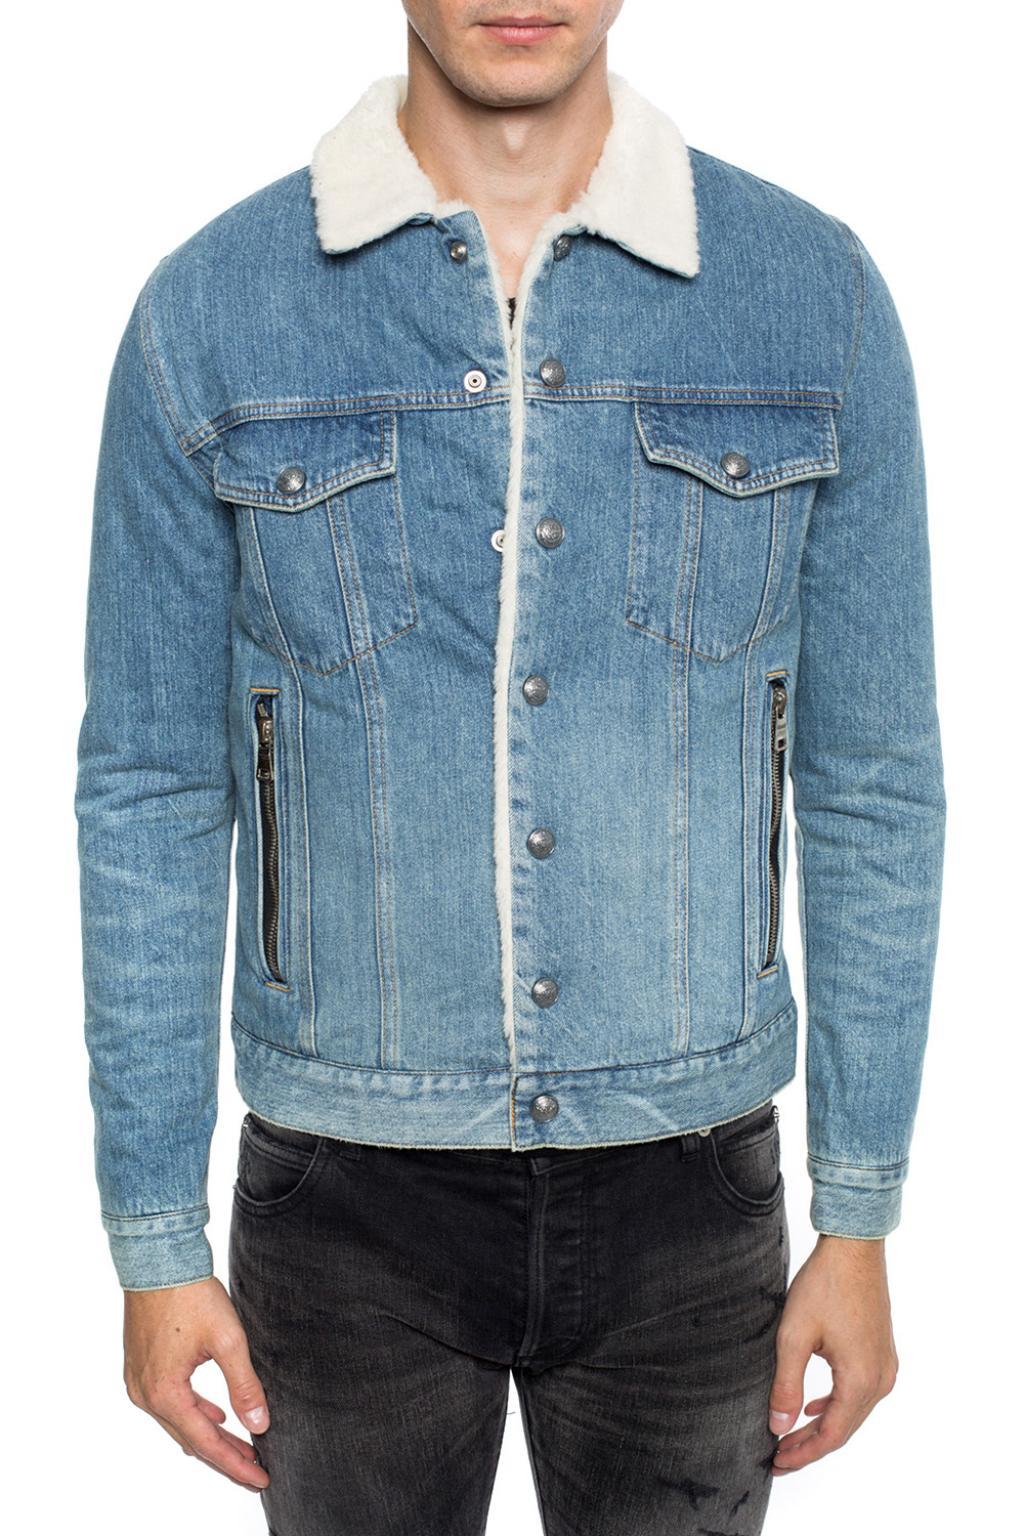 balmain jeans jacket